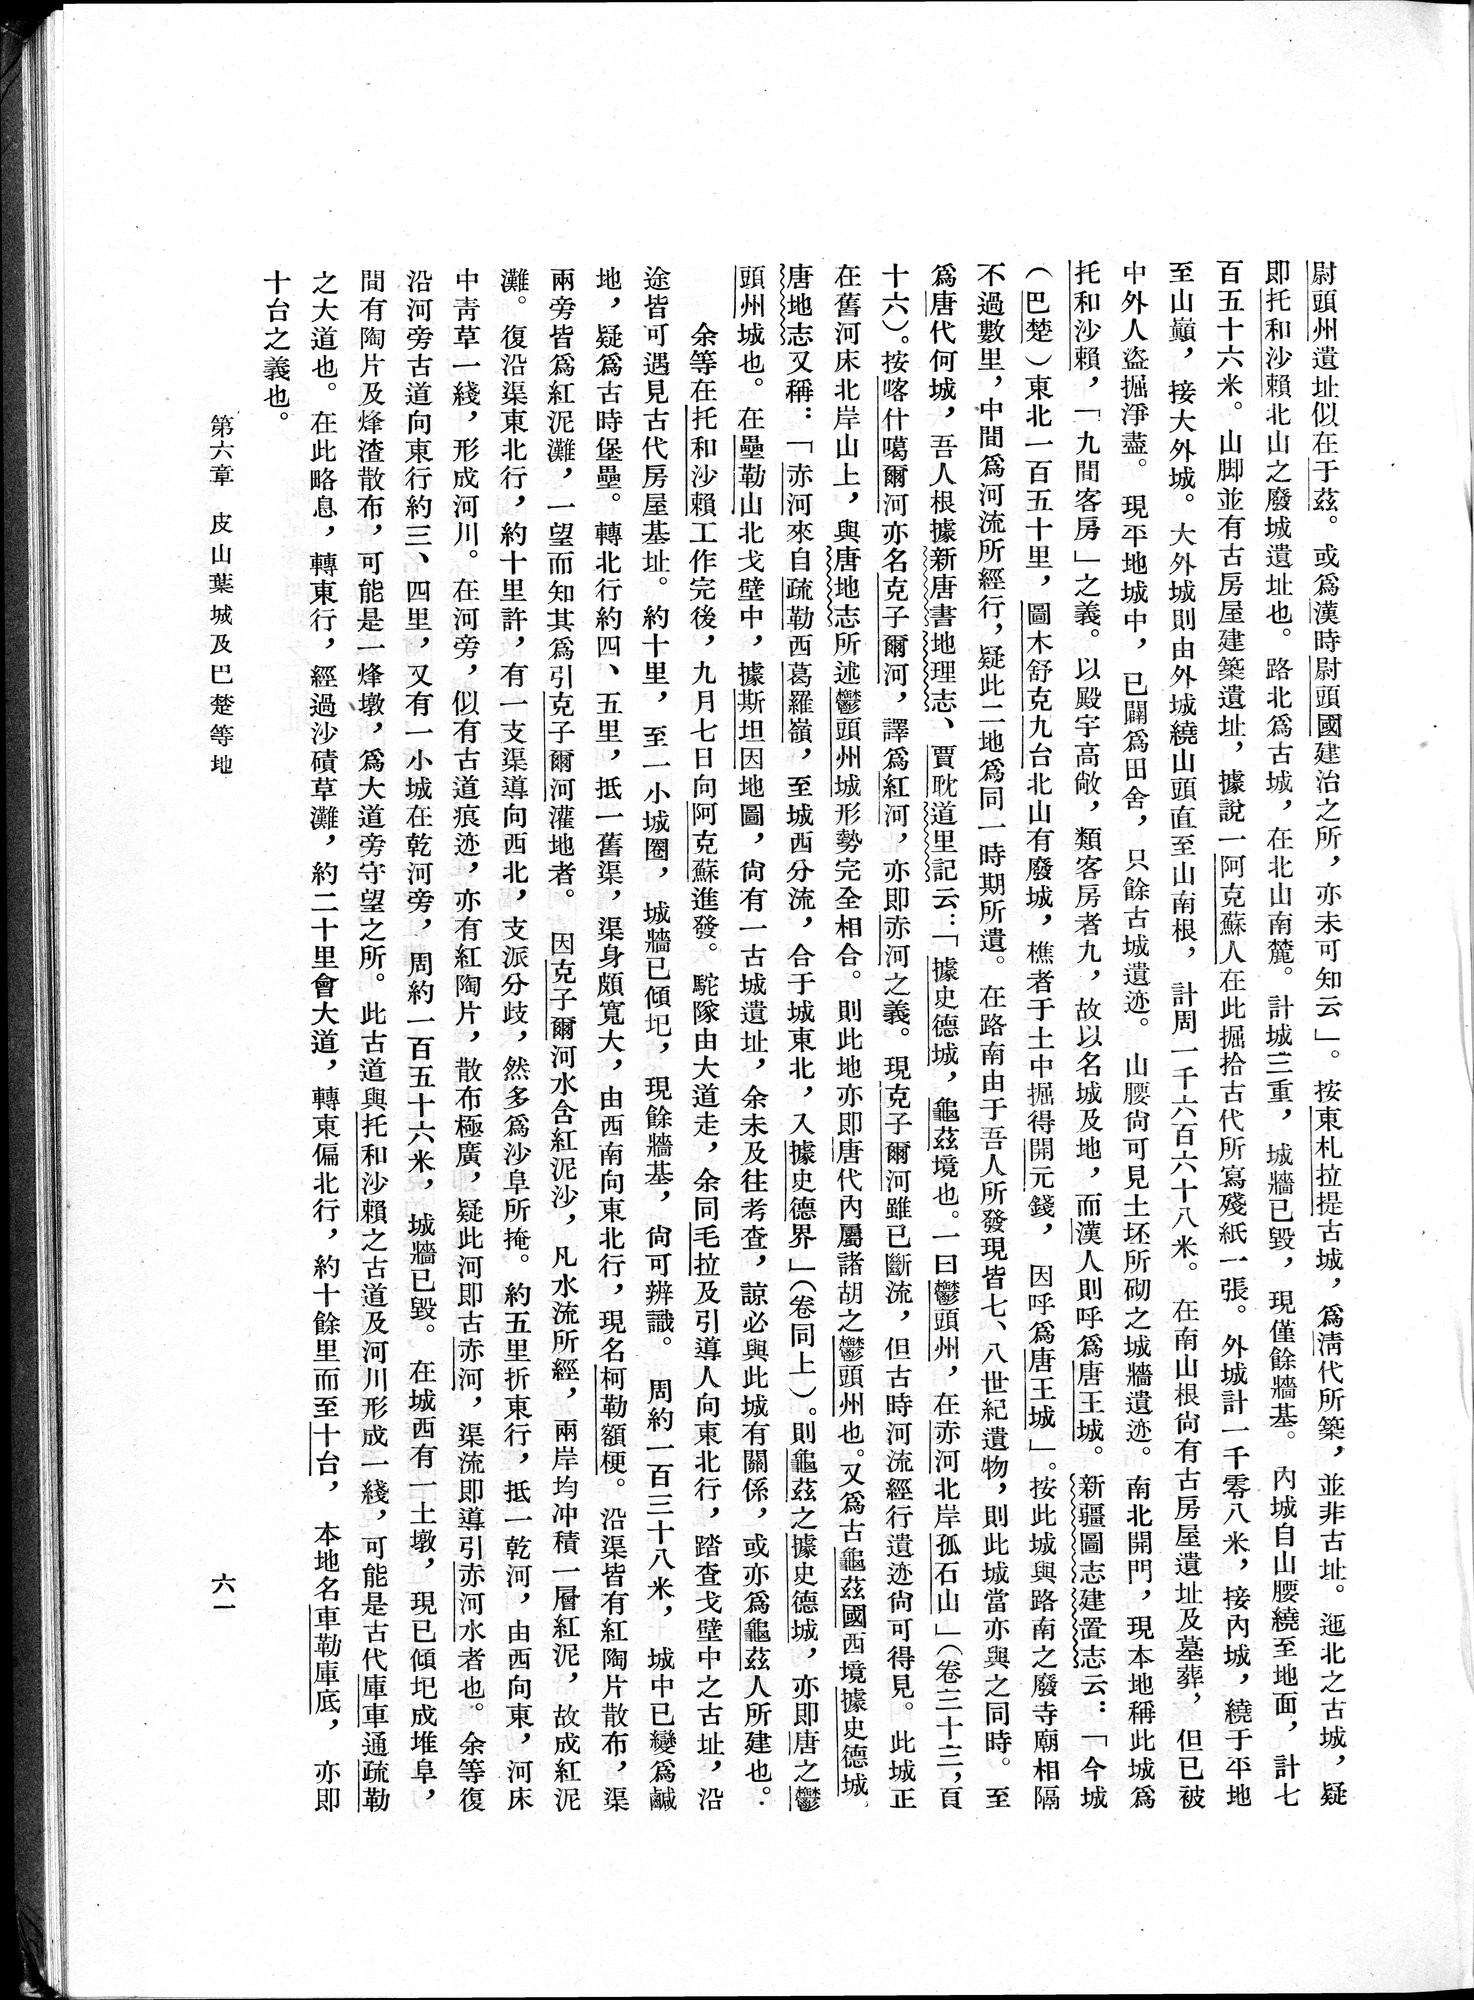 塔里木盆地考古記 : vol.1 / Page 85 (Grayscale High Resolution Image)